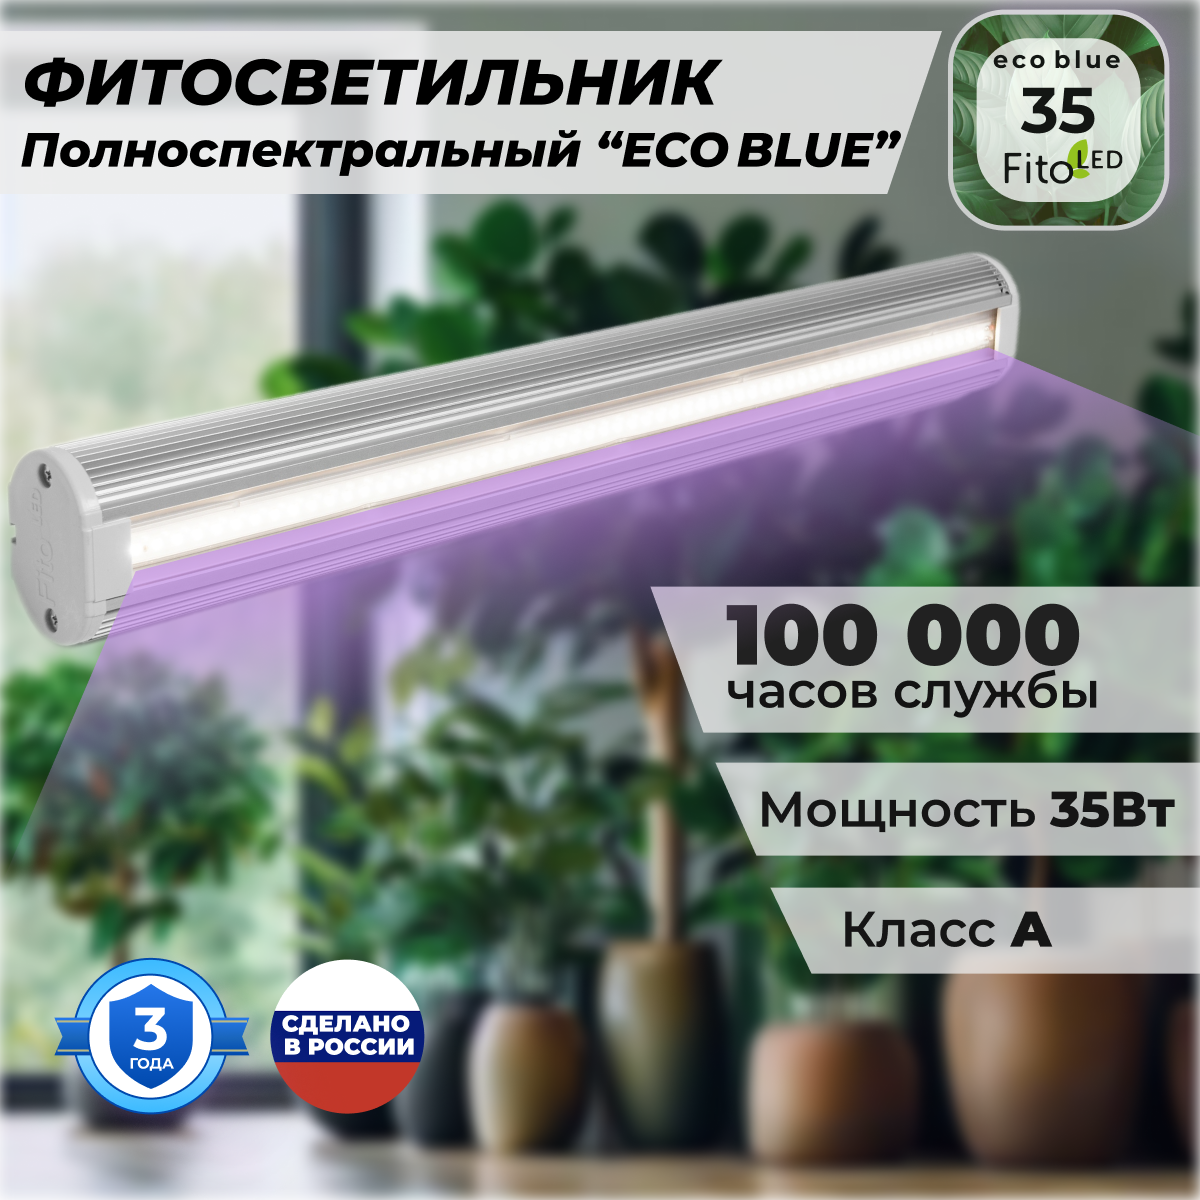 Фитосветильник FitoLED 35 Eco Blue для растений полноспектральный